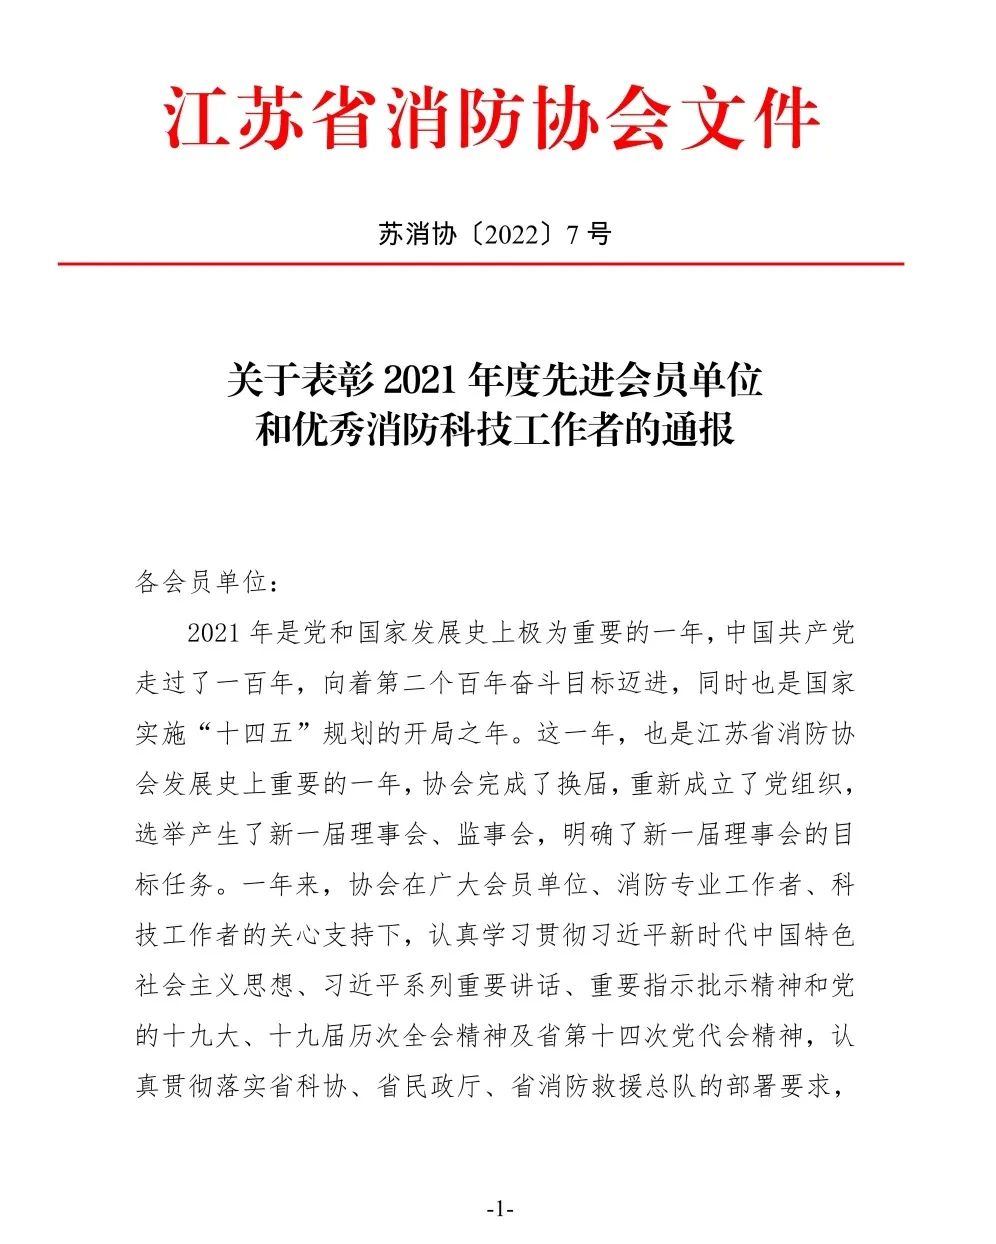 锁龙喜讯|锁龙消防荣获江苏省消防协会“2021年度先进会员单位”表彰